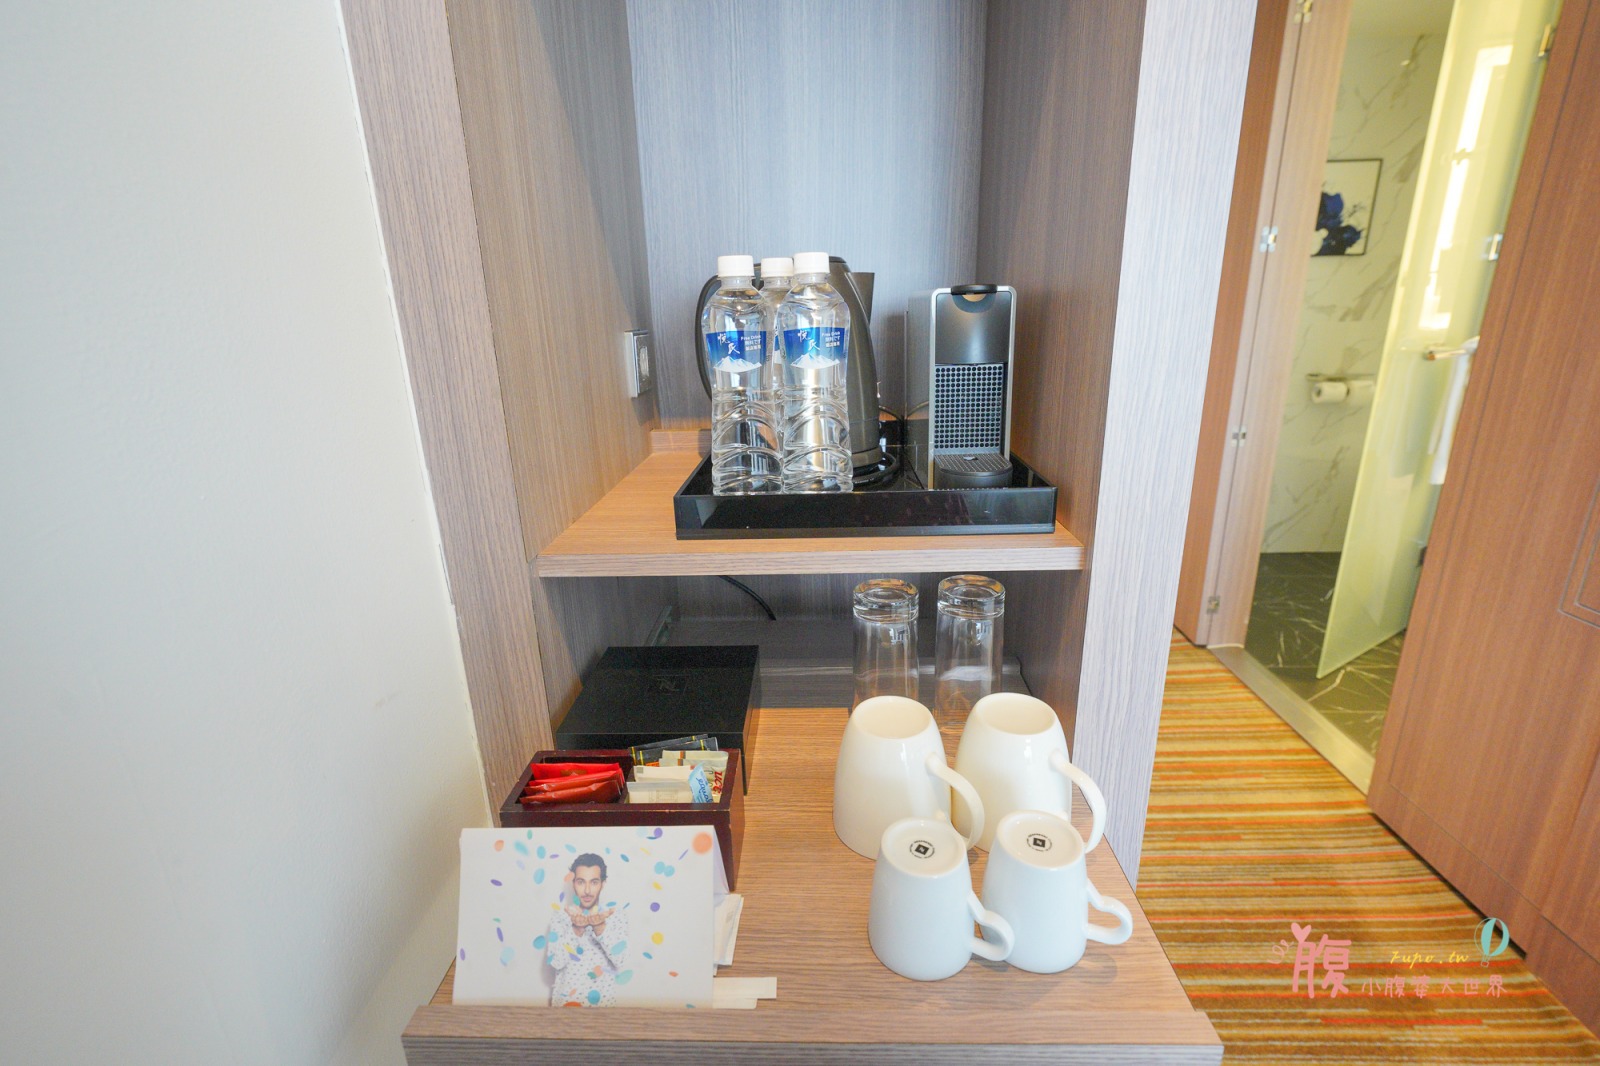 桃園住宿》華航諾富特飯店 Novotel Taipei，房間內就可以看飛機，16歲以下孩童免費加床及早餐